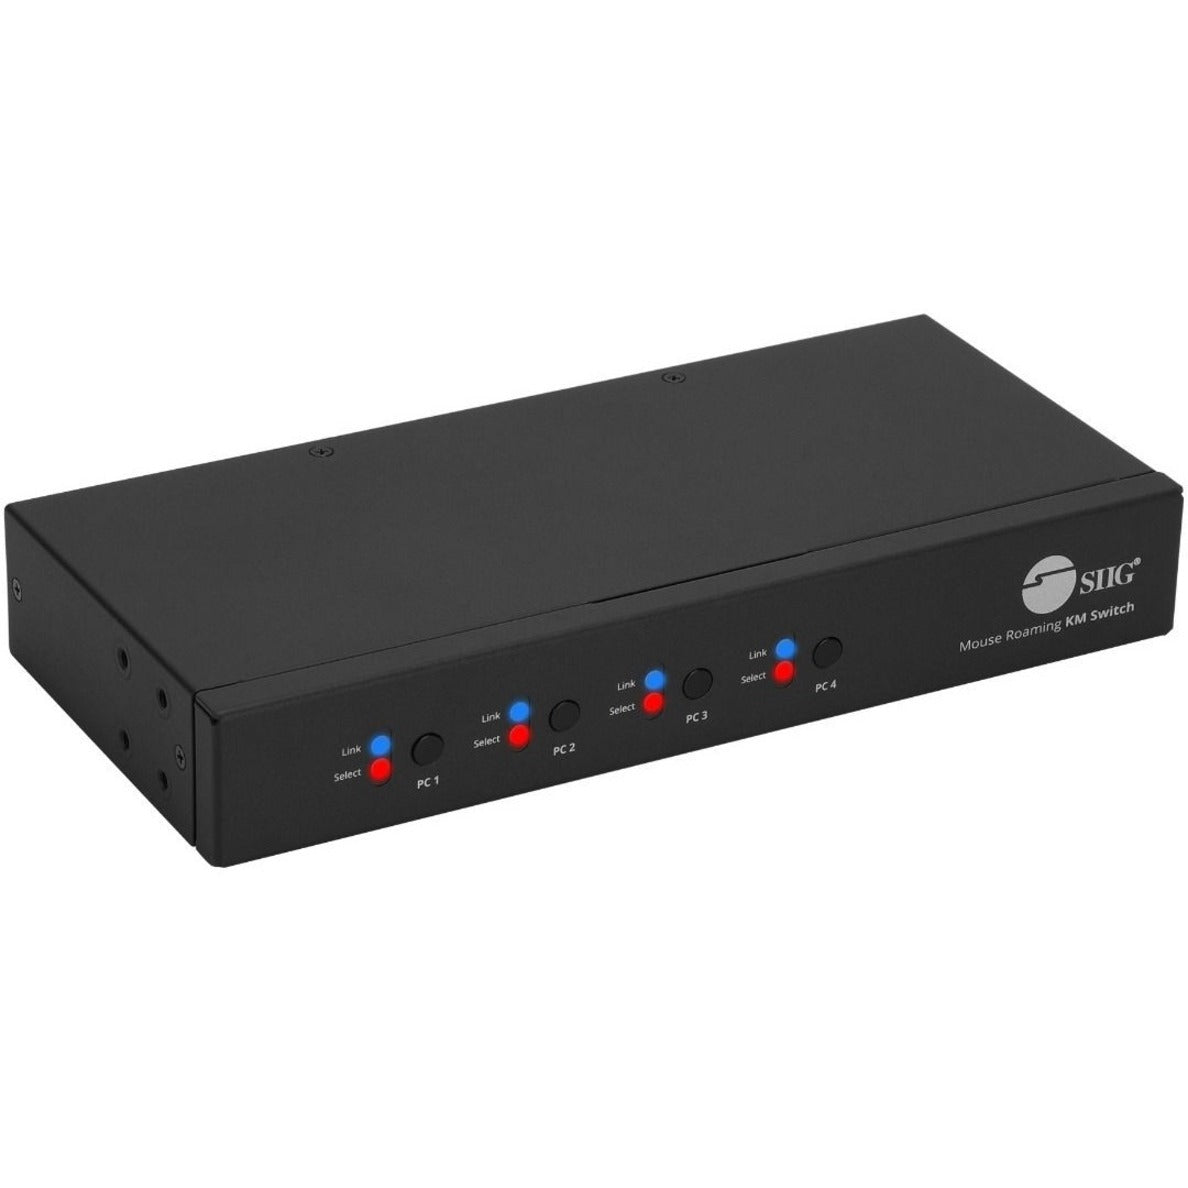 Marca: SIIG Interruptor Roaming de KM de 4 Puertos con Concentrador USB 2.0 Conectar y Listo Cumple con TAA